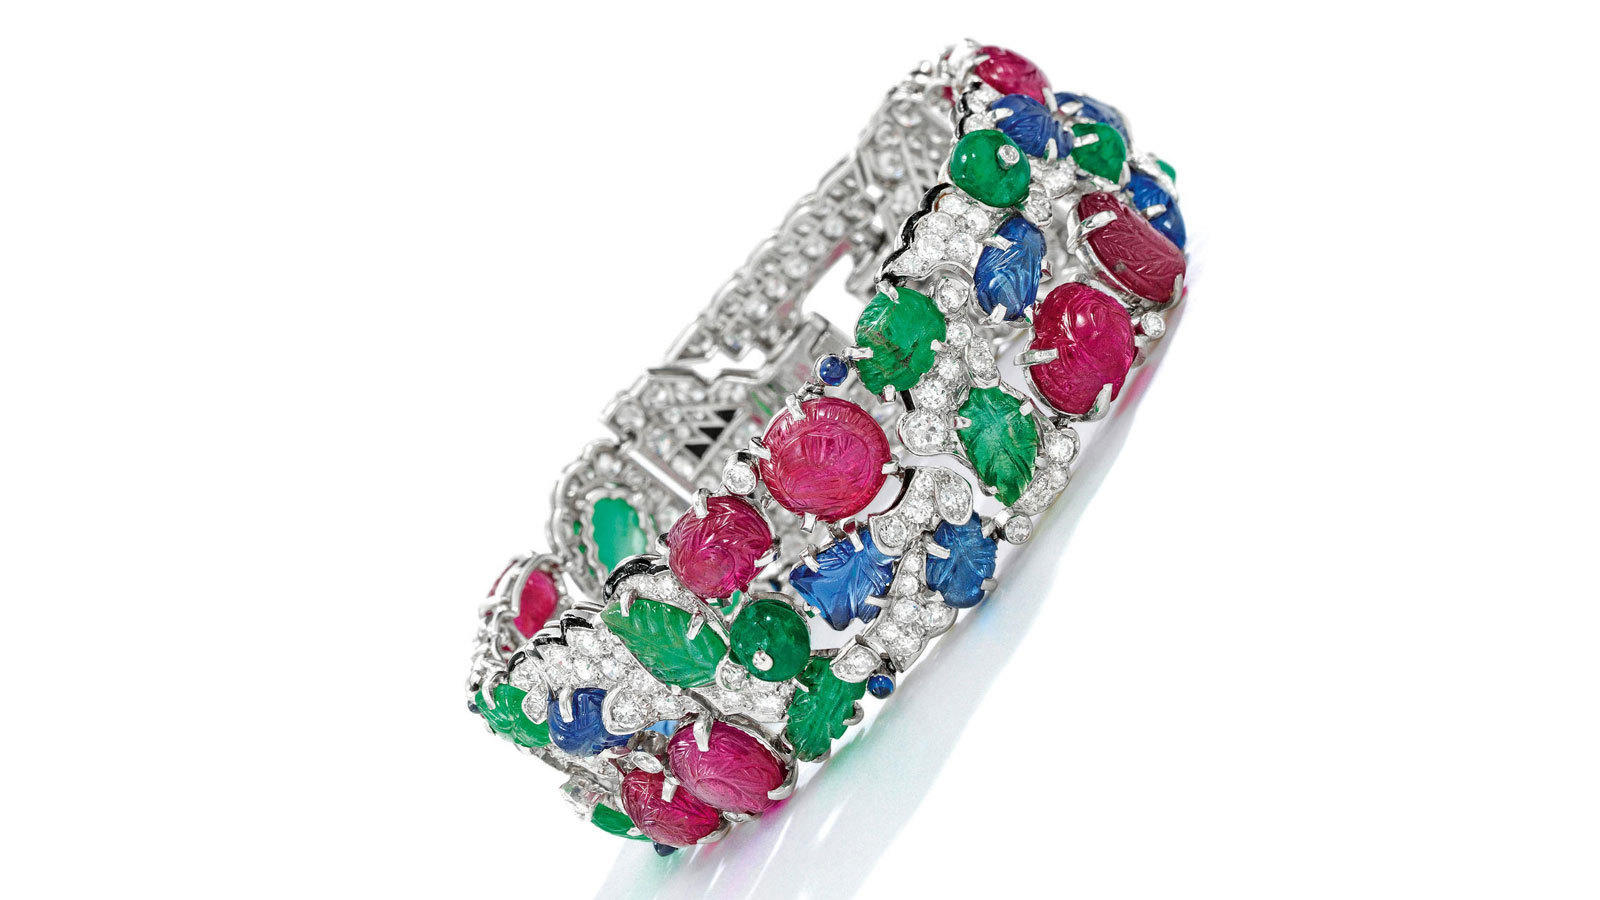 Cartier's 'Tutti Frutti' bracelet makes auction debut, fetches $1,340,000 -  The Economic Times